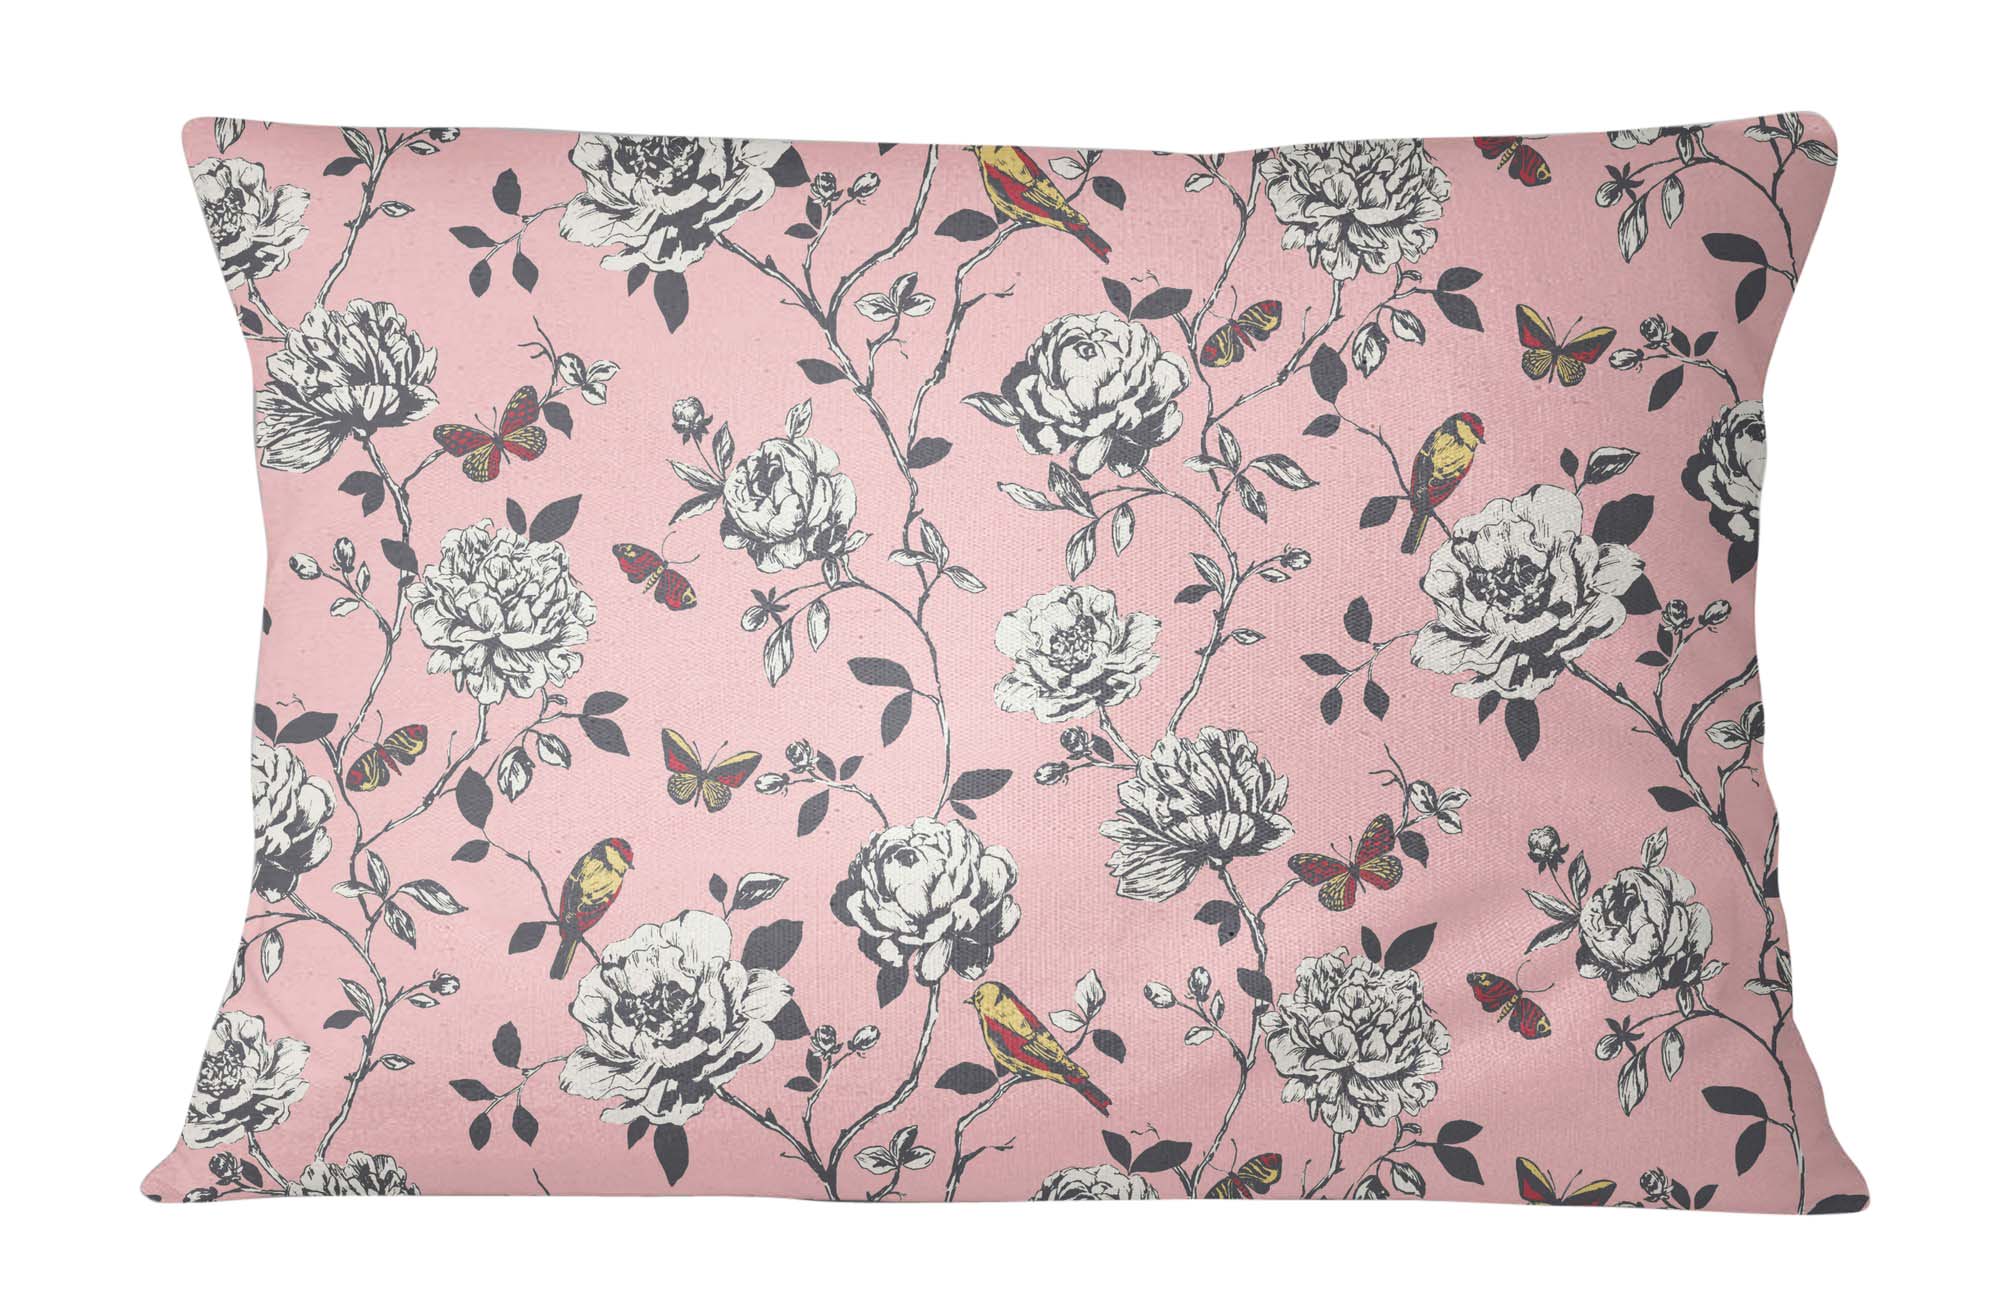 Details about   S4Sassy Cotton Poplin Floral & Bird Print Peach 2 Pcs Decorative Pillow Sham 